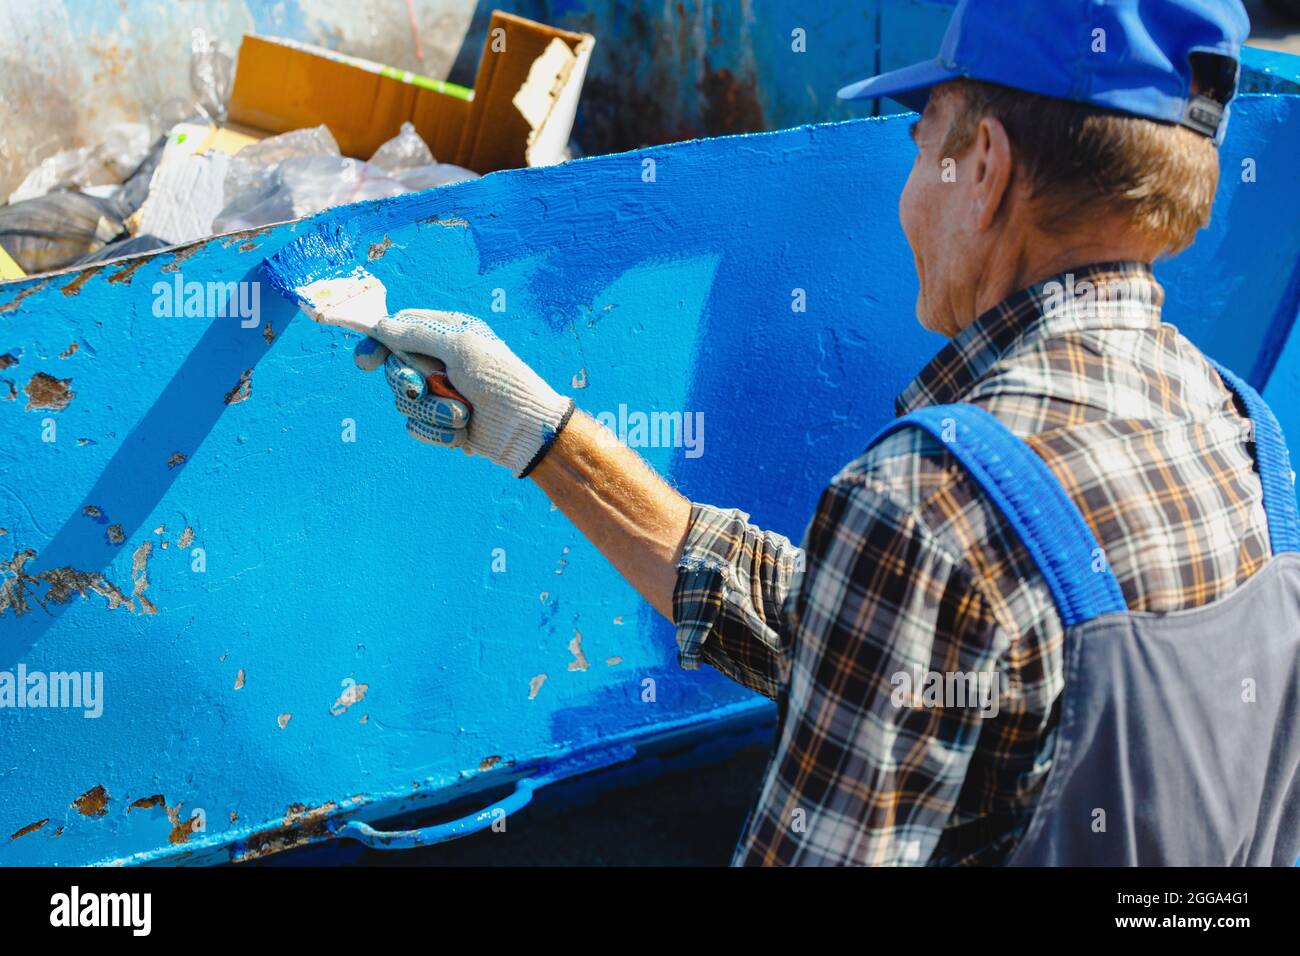 Ein alter Mann in einem Arbeitsanzug malt mit einem Pinsel auf der Straße eine Mülltonne oder einen Behälter. Teilzeitarbeit für einen Rentner. Mühsal. Stockfoto